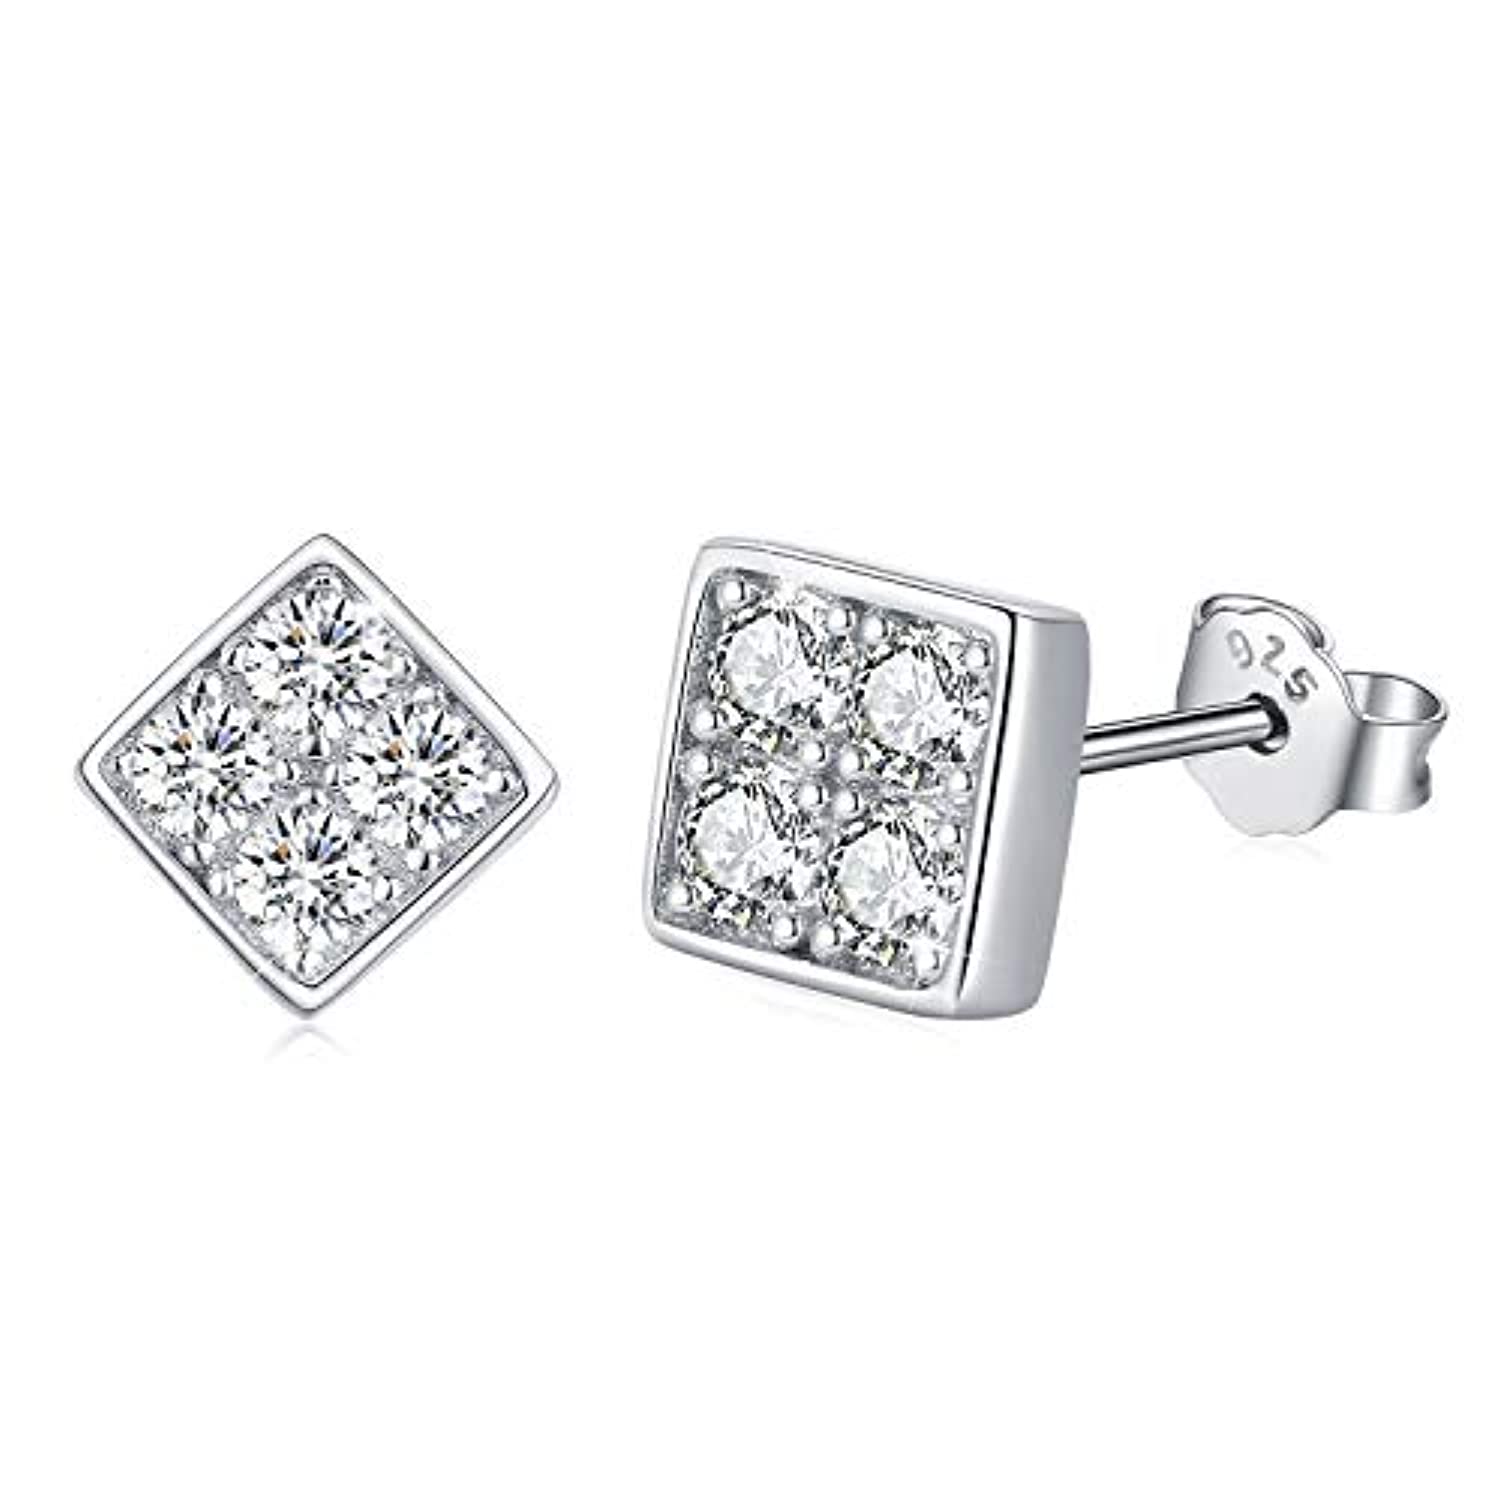 S925 Sterling Silver Square Cubic Zircon Stud Earrings for Women Men